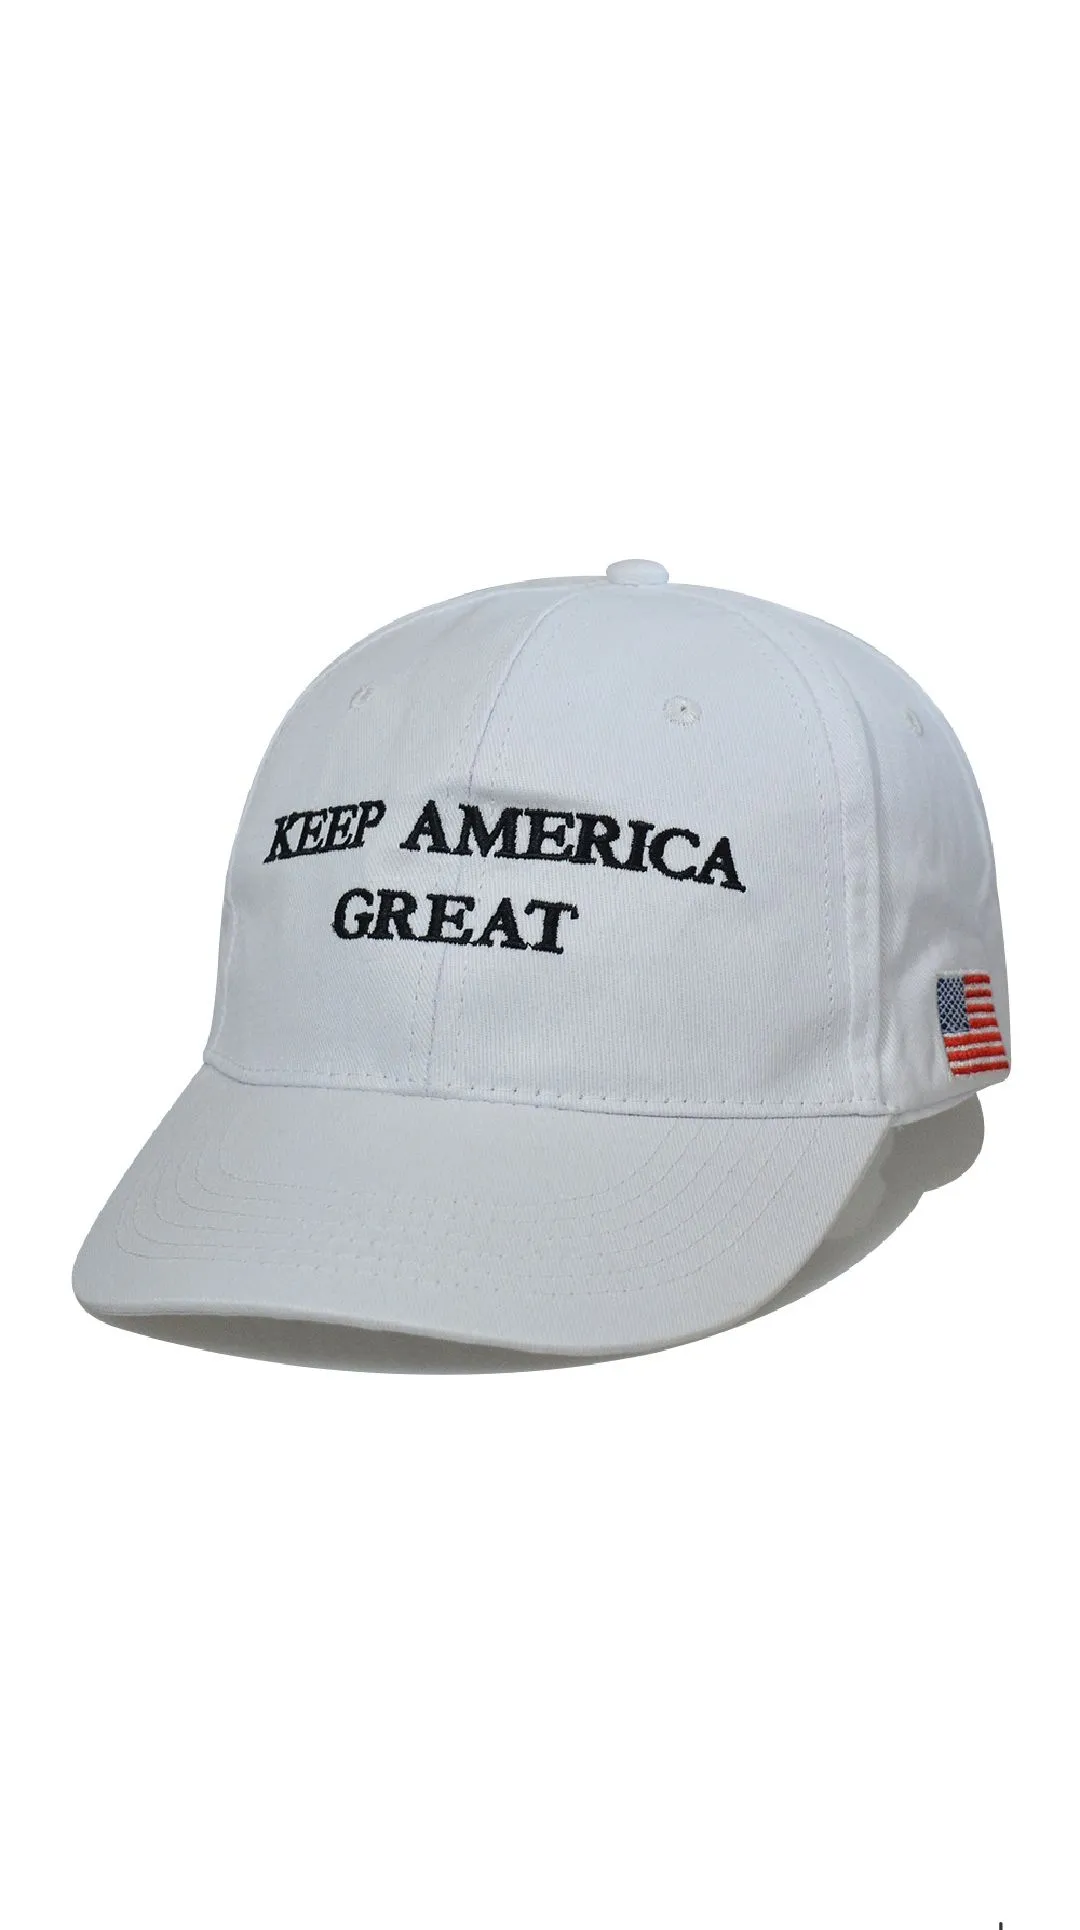 Casquette de baseball Donald Trump pour les élections américaines de 2024, faites garder l'Amérique à nouveau grande, chapeau brodé, casquettes du président républicain Trump avec Ameri3868731